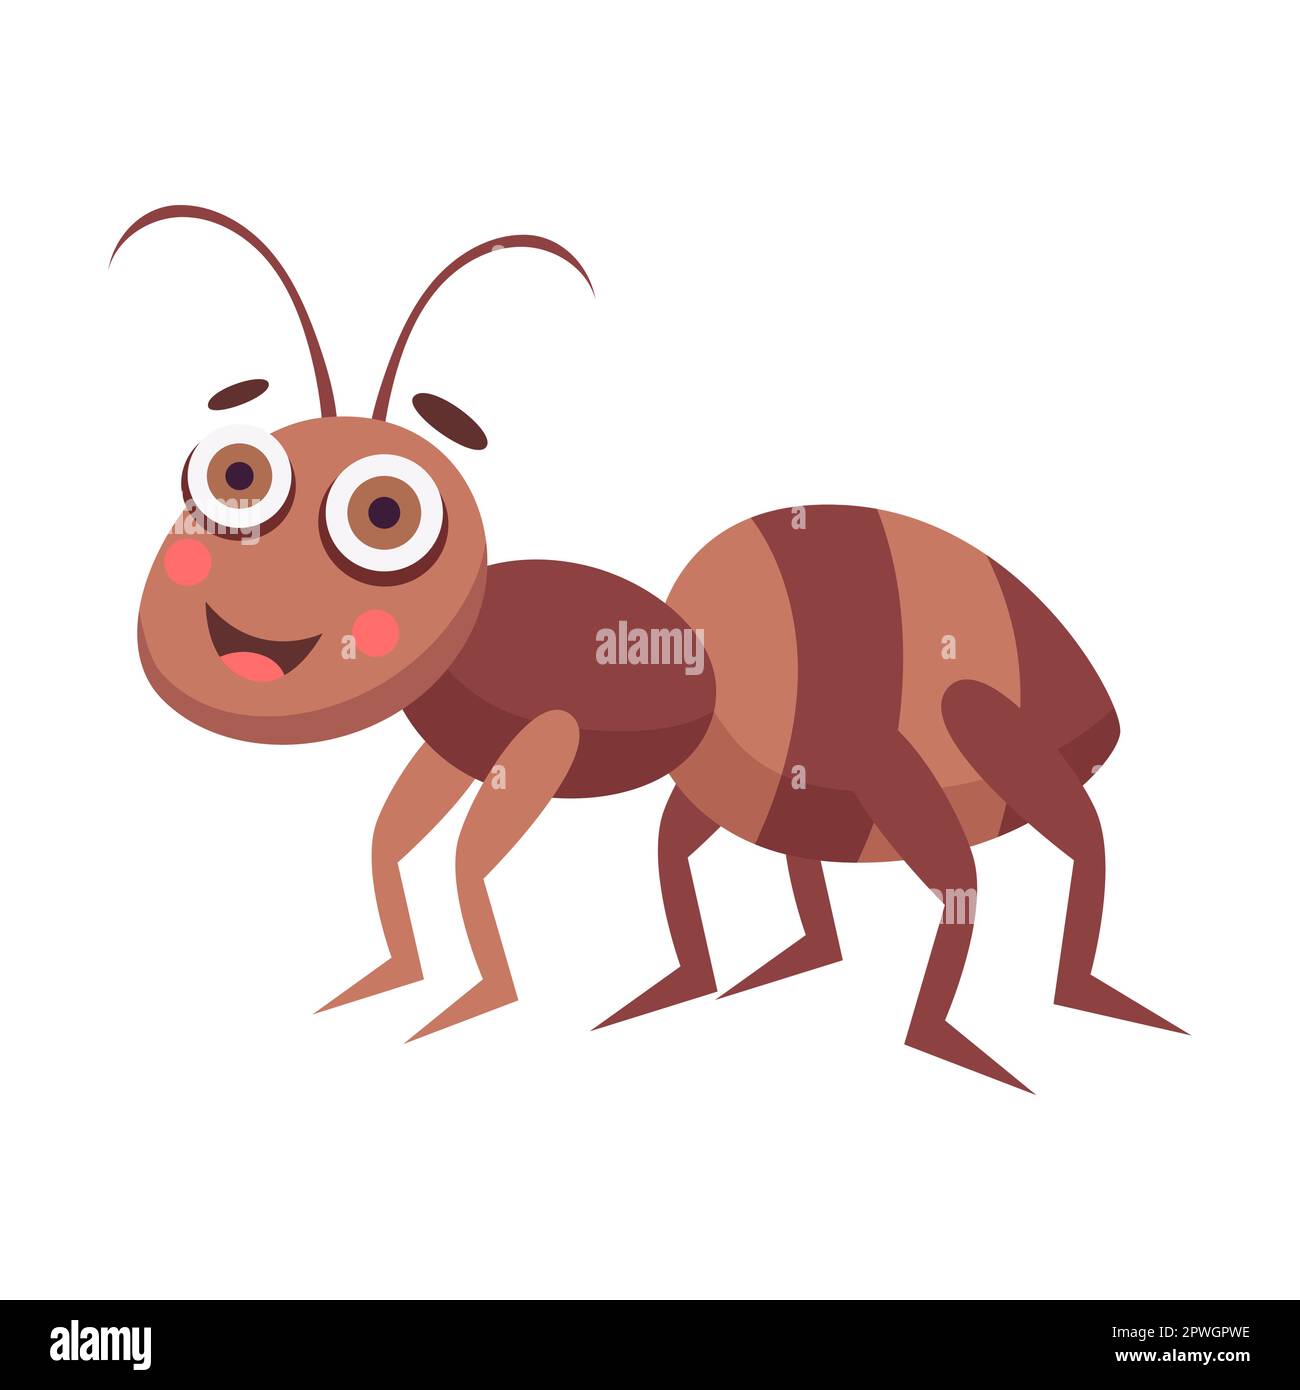 Hart arbeitende kleine Ameise. Süßes Cartoon-Insekt. Vektordarstellung eines Wald- oder Gartentieres, lustige Insektenfigur isoliert auf Weiß Stock Vektor